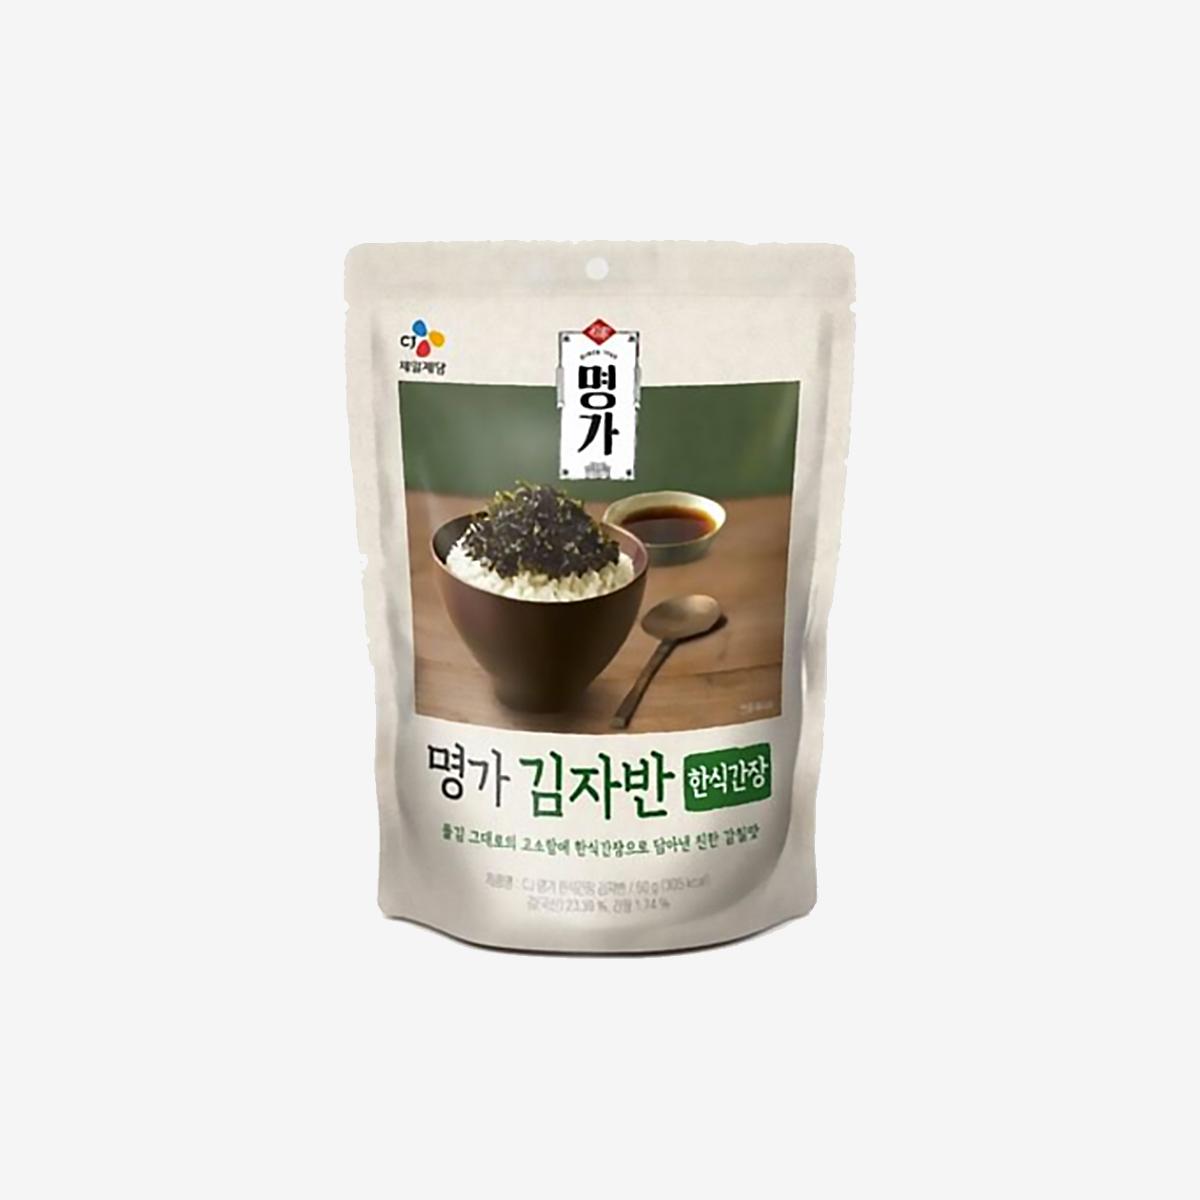 韓式醬油拌飯海苔 (50g)